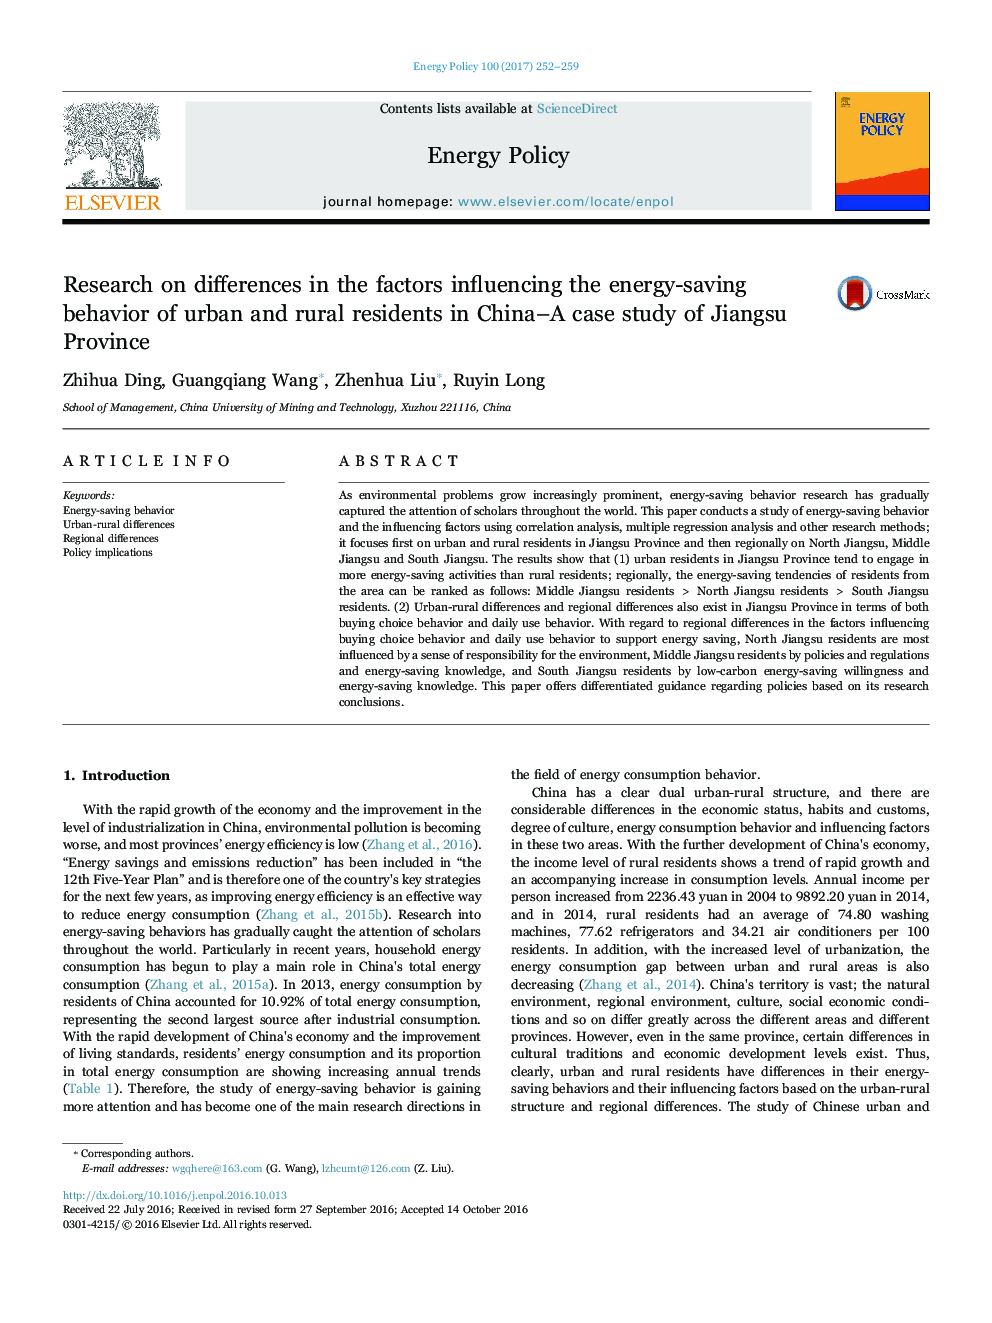 تحقیق در مورد تفاوت در عوامل موثر بر رفتار صرفه جویی در انرژی ساکنان شهری و روستایی در چین - مطالعه موردی استان جیانگسو 